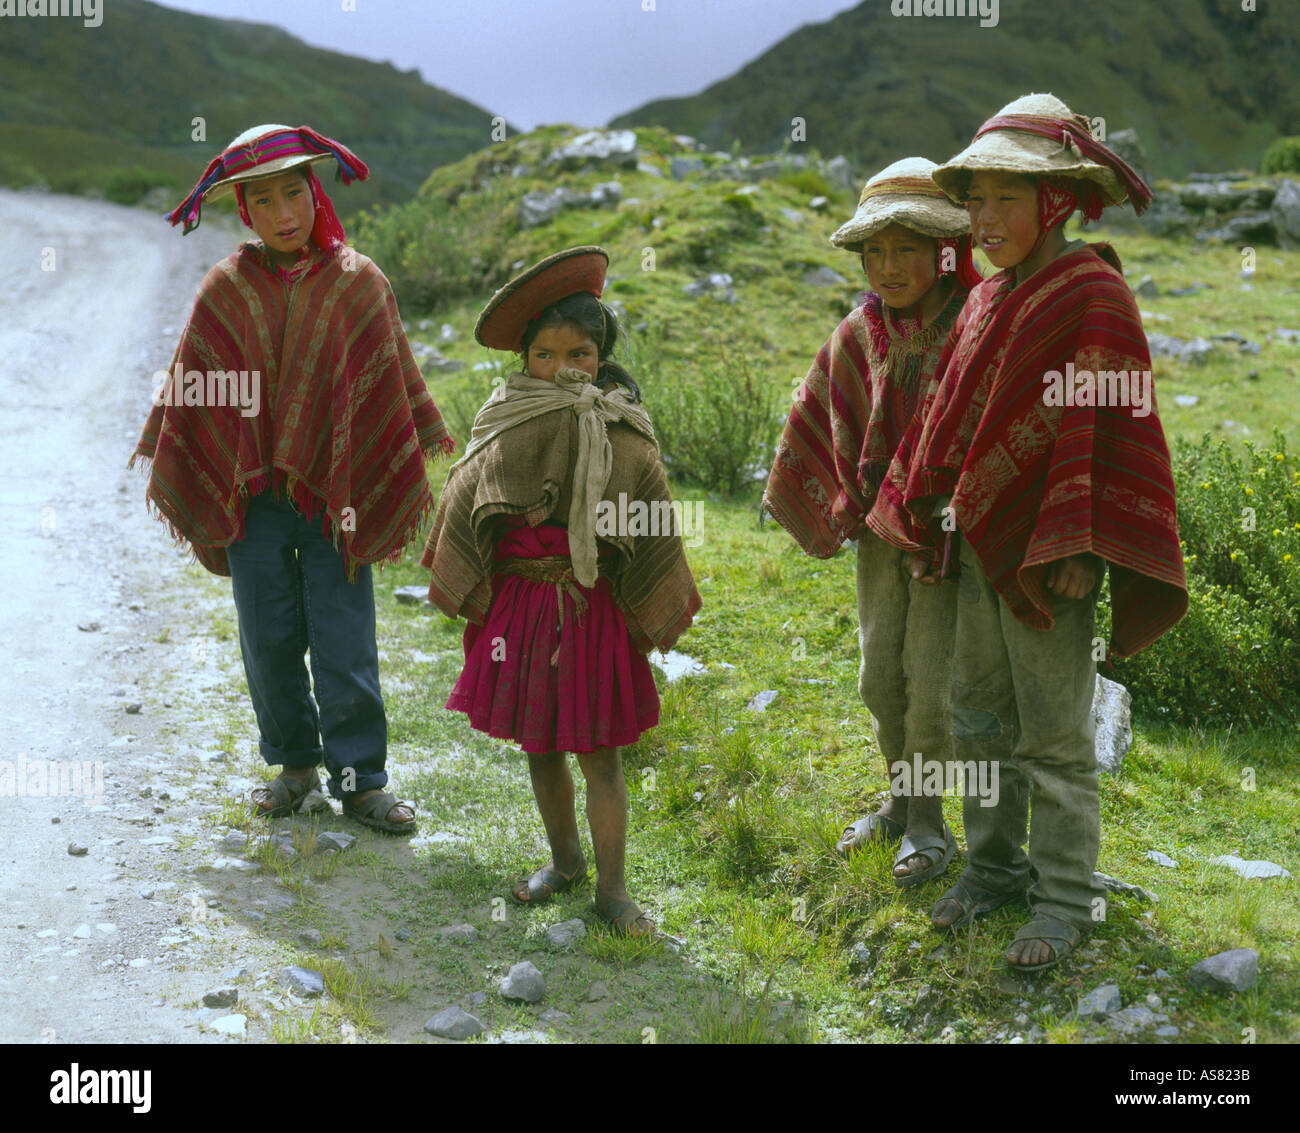 Quatre enfants dans les Andes ponchos traditionnels accueillent les visiteurs sur une route de montagne dans les andes près de Cuzco au Pérou Banque D'Images